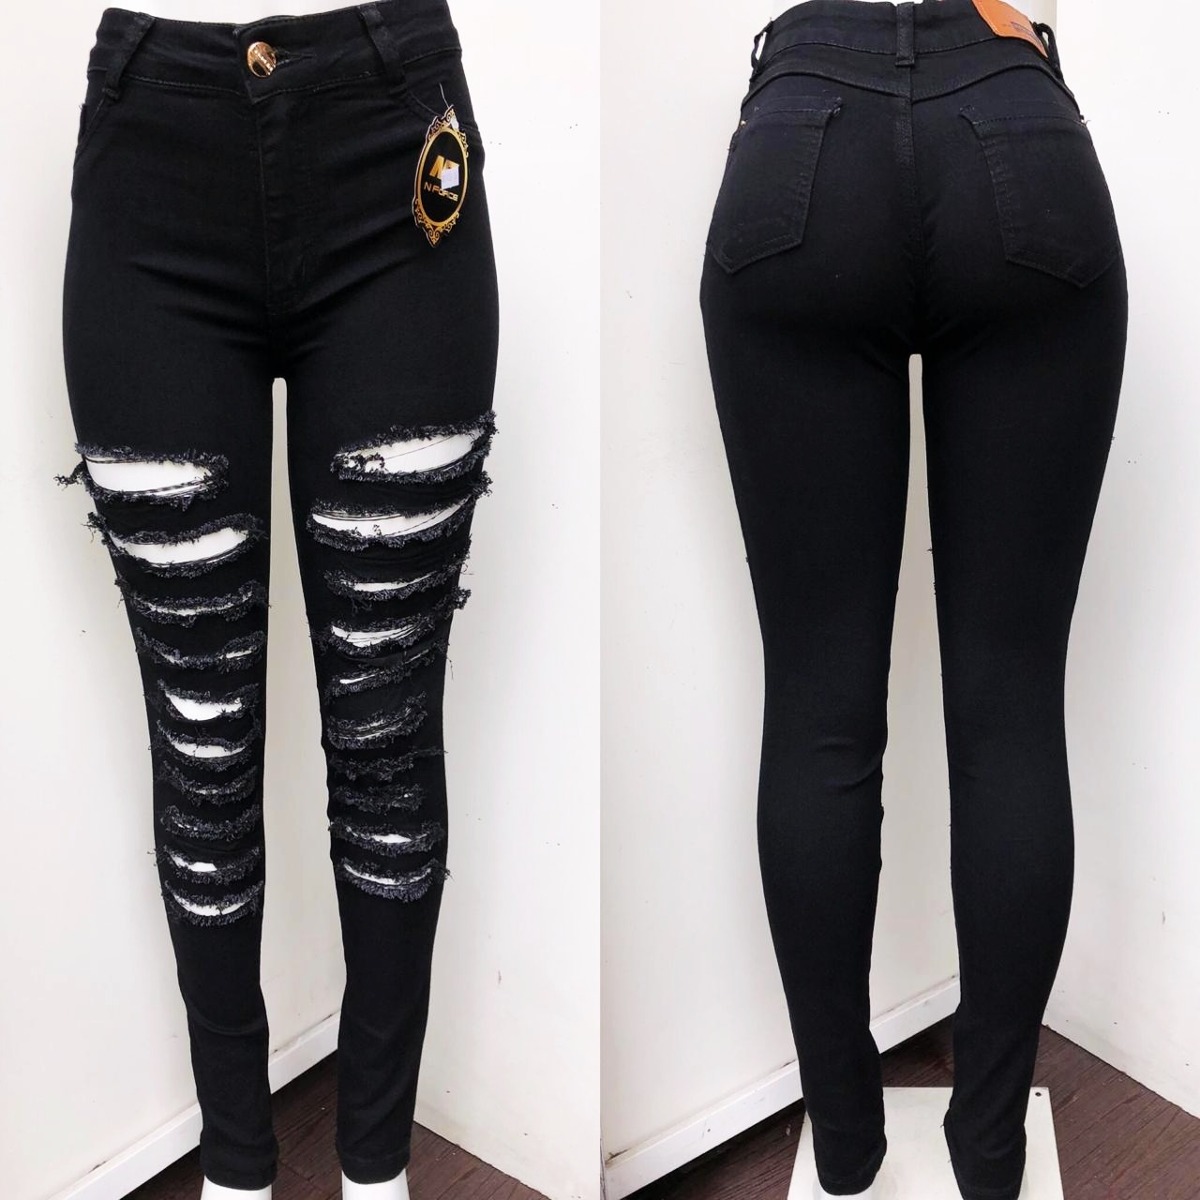 calça jeans feminina rasgadinha preta